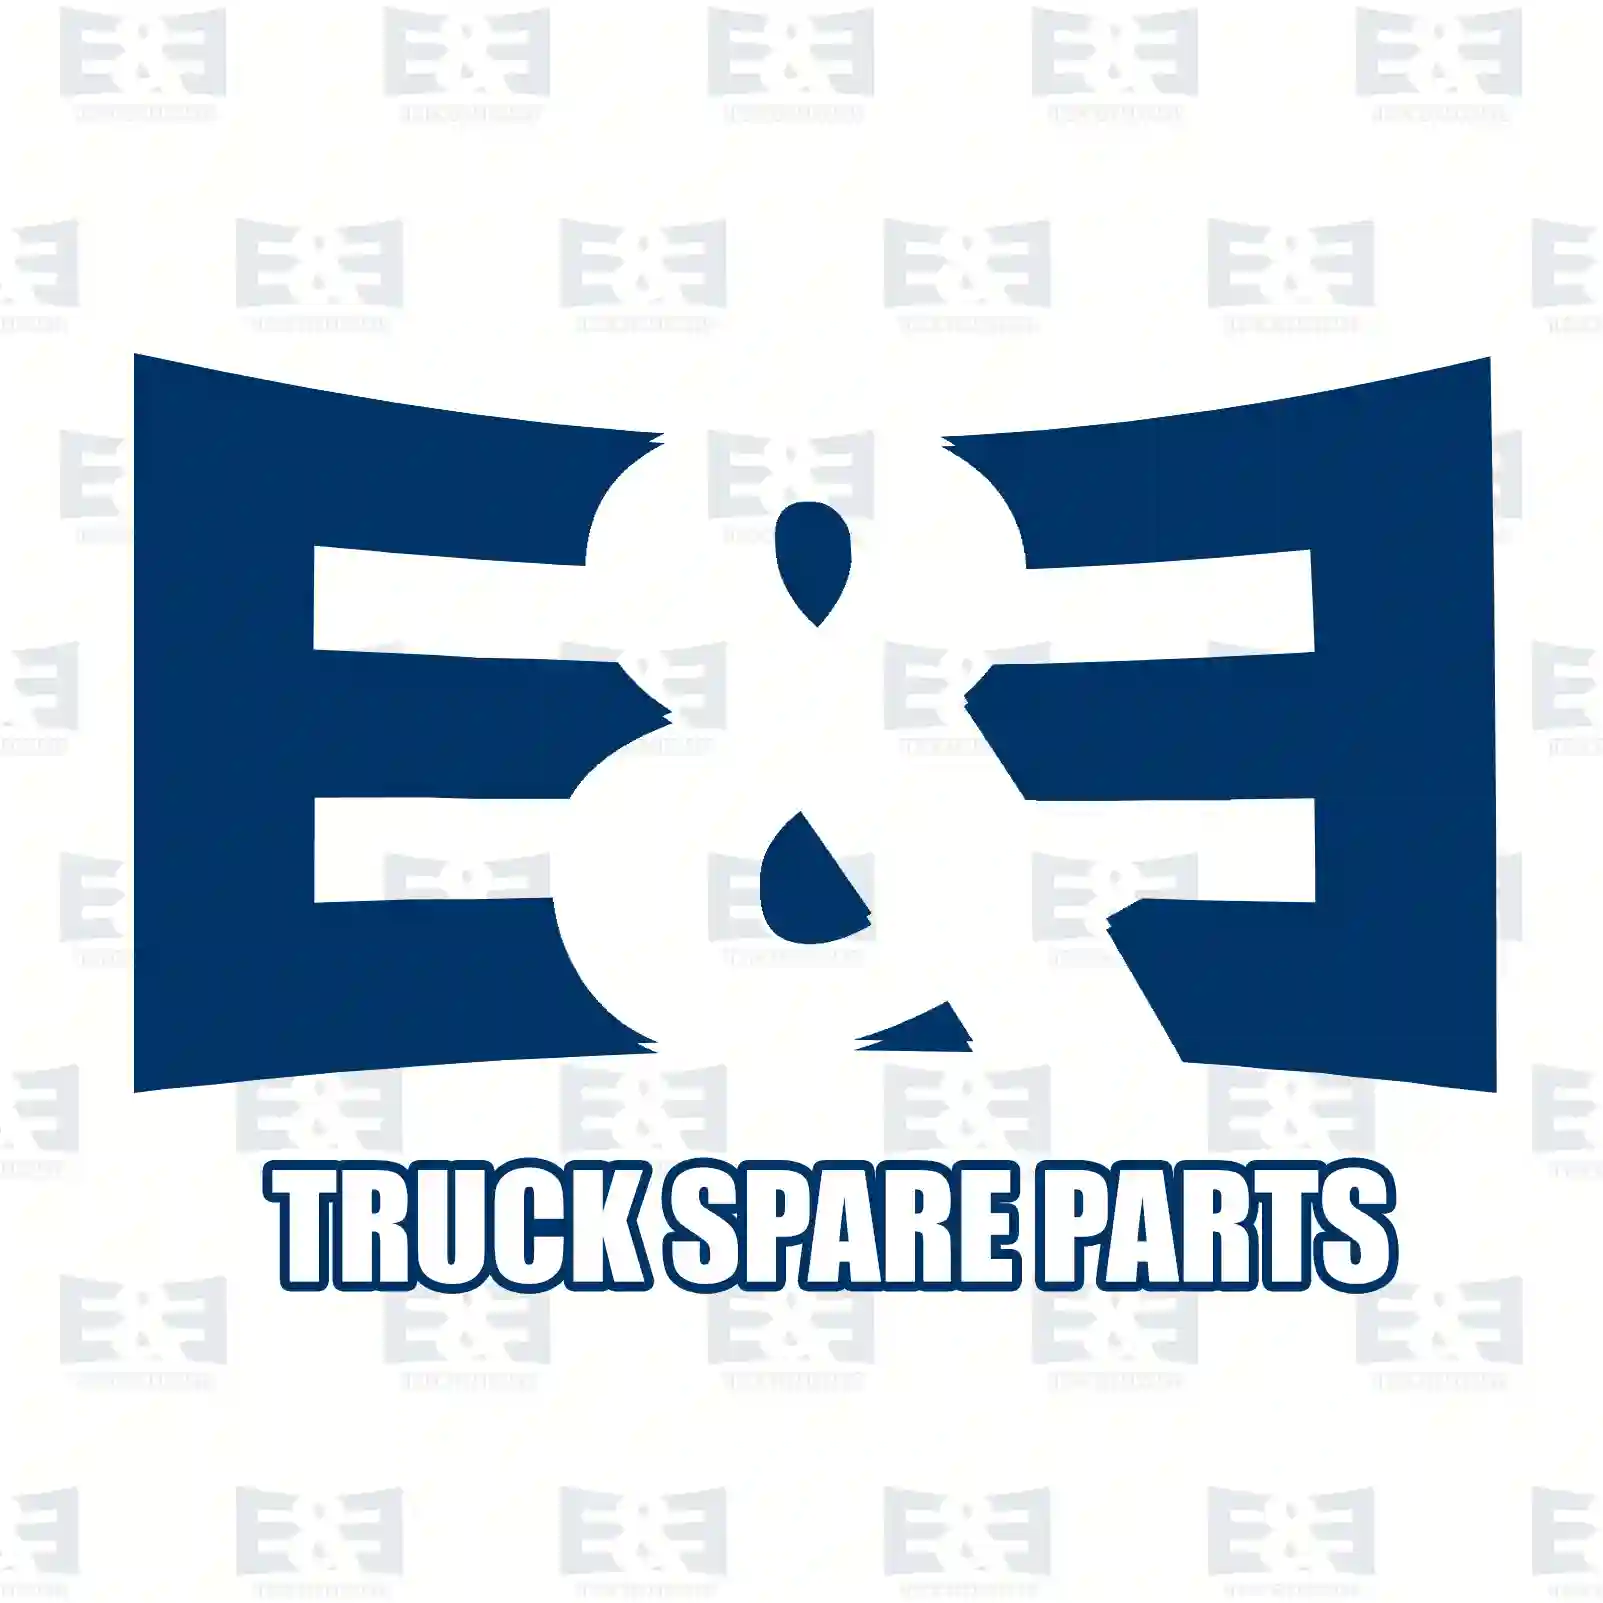 Belts V-belt, EE No 2E2286448 ,  oem no:4663950, 02235177, 91073828, 91082710, 19111-590-0601, 02068059, 007753009519, 7701029710, 90916-02285, 958326, 966931, 977387, ZG02341-0008 E&E Truck Spare Parts | Truck Spare Parts, Auotomotive Spare Parts